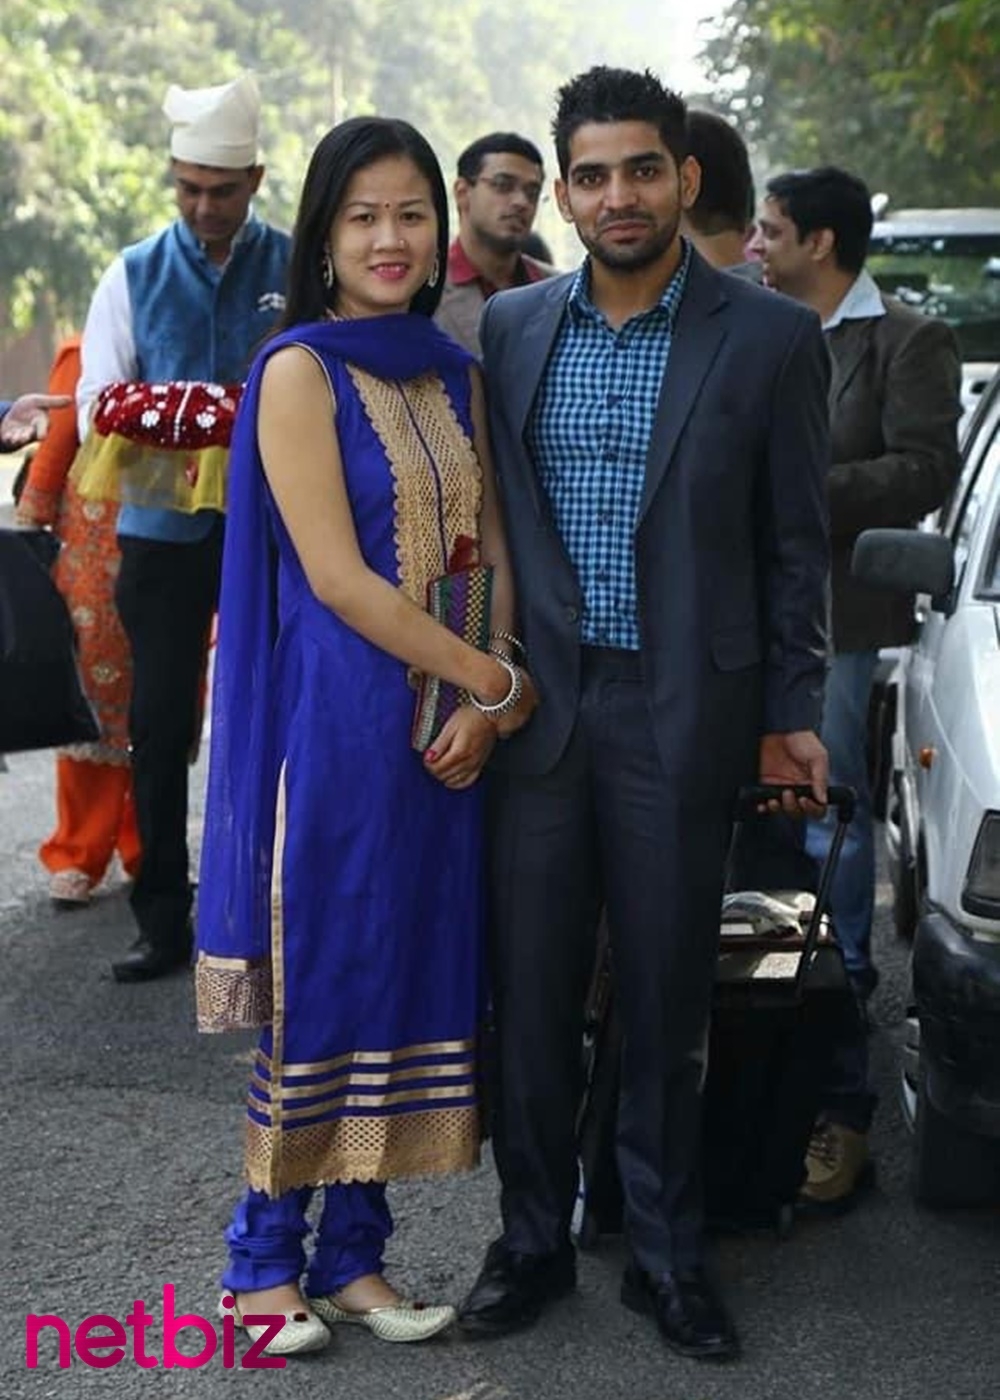 Cô dâu Việt cùng chồng Ấn nổi tiếng trên mạng xã hội tiết lộ lễ cưới kéo dài liên tục ba ngày ba đêm